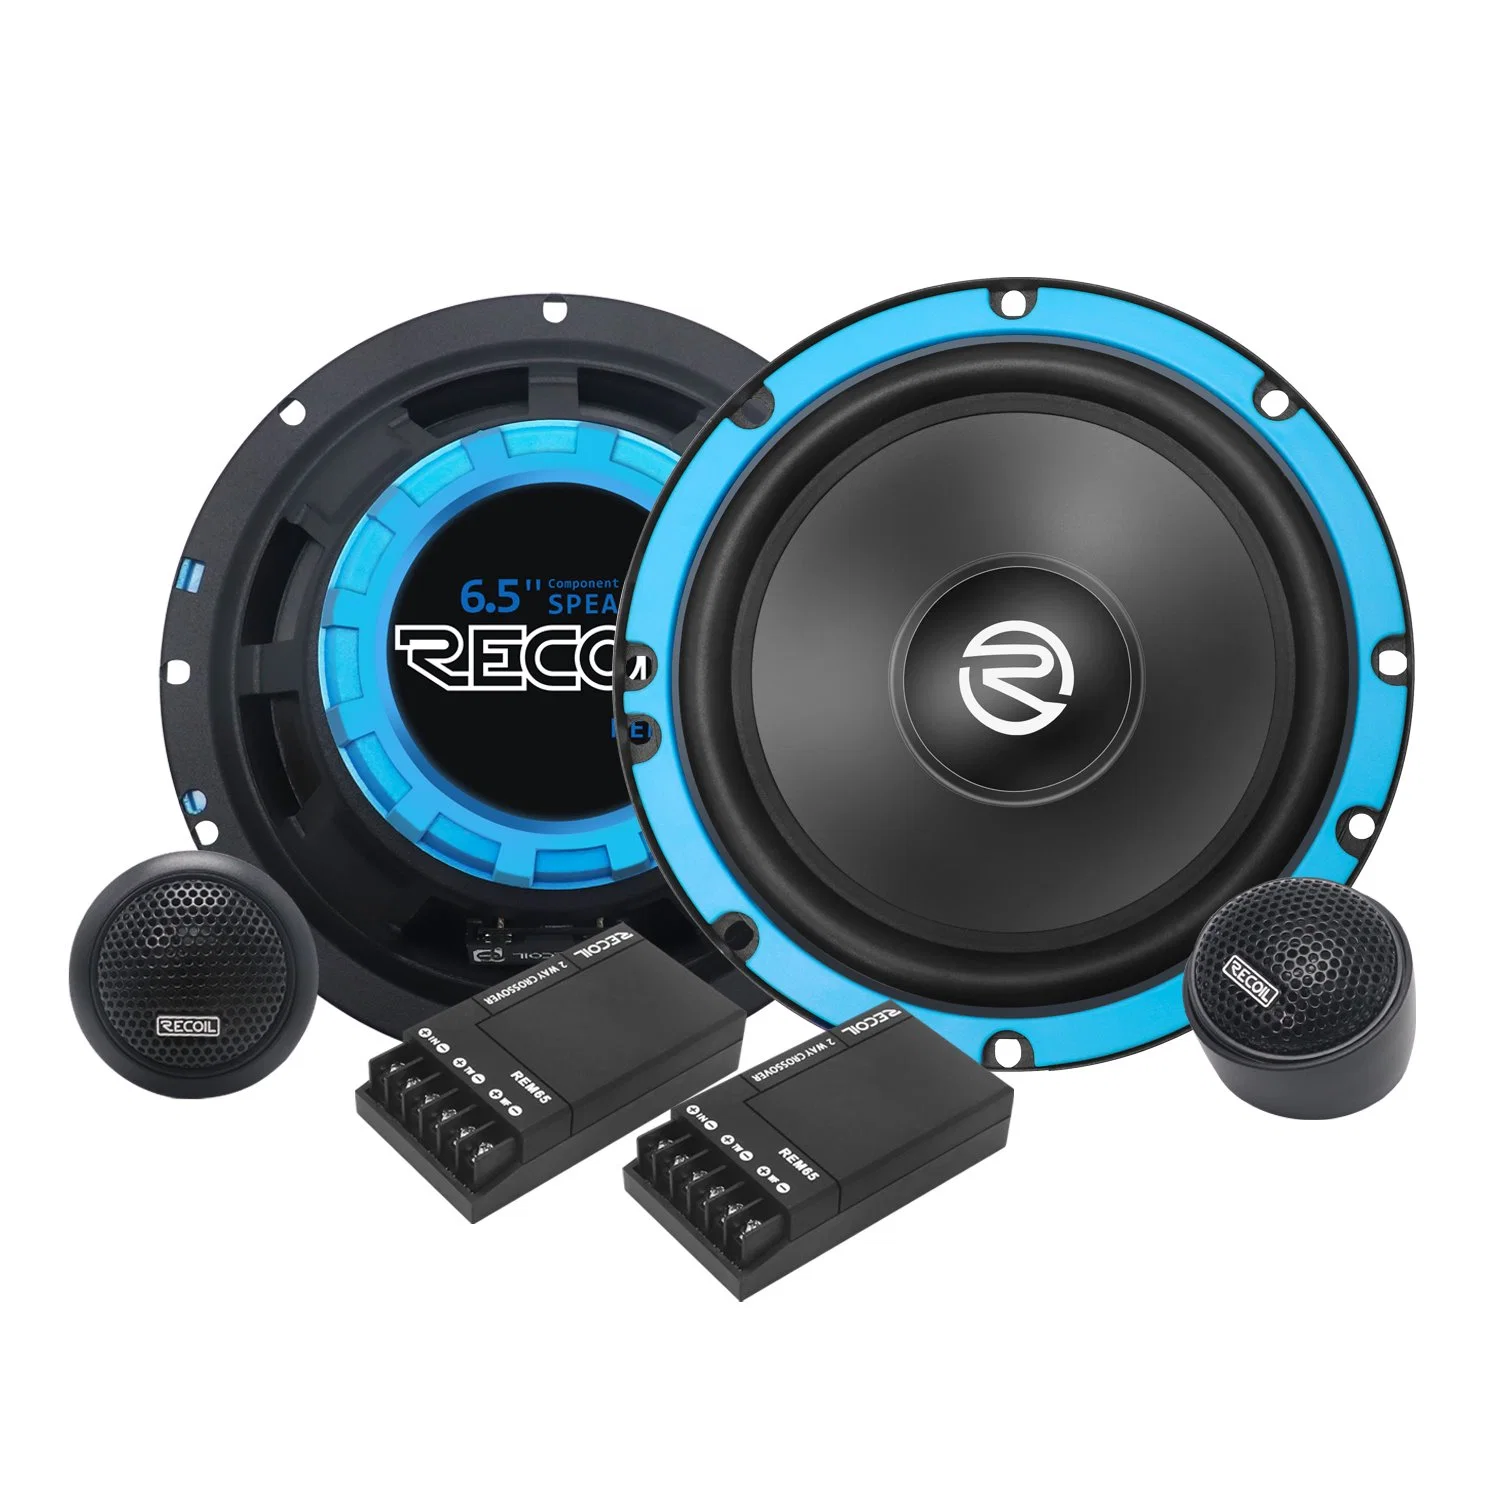 Edge Rem65 Echo Series 6.5-Inch Système de haut-parleurs pour composants audio de voiture.